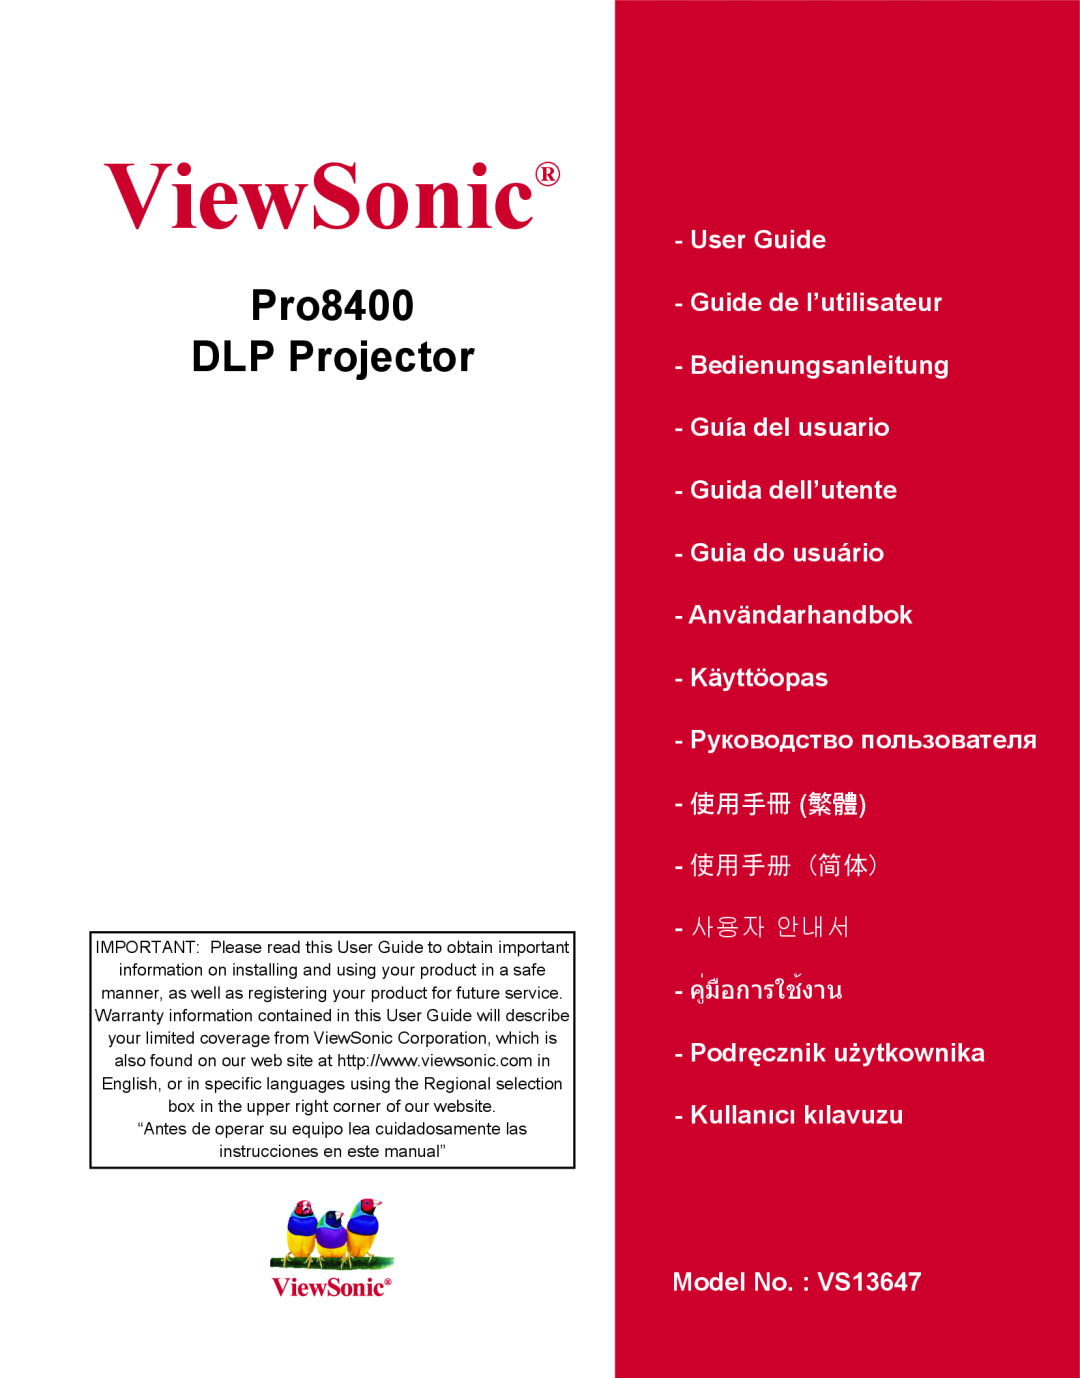 ViewSonic VS13647 warranty Pro8400 DLP Projector, ViewSonic, 使用手冊 繁體, 使用手册 简体, 사용자 안내서, คู่มือการใช้งาน 